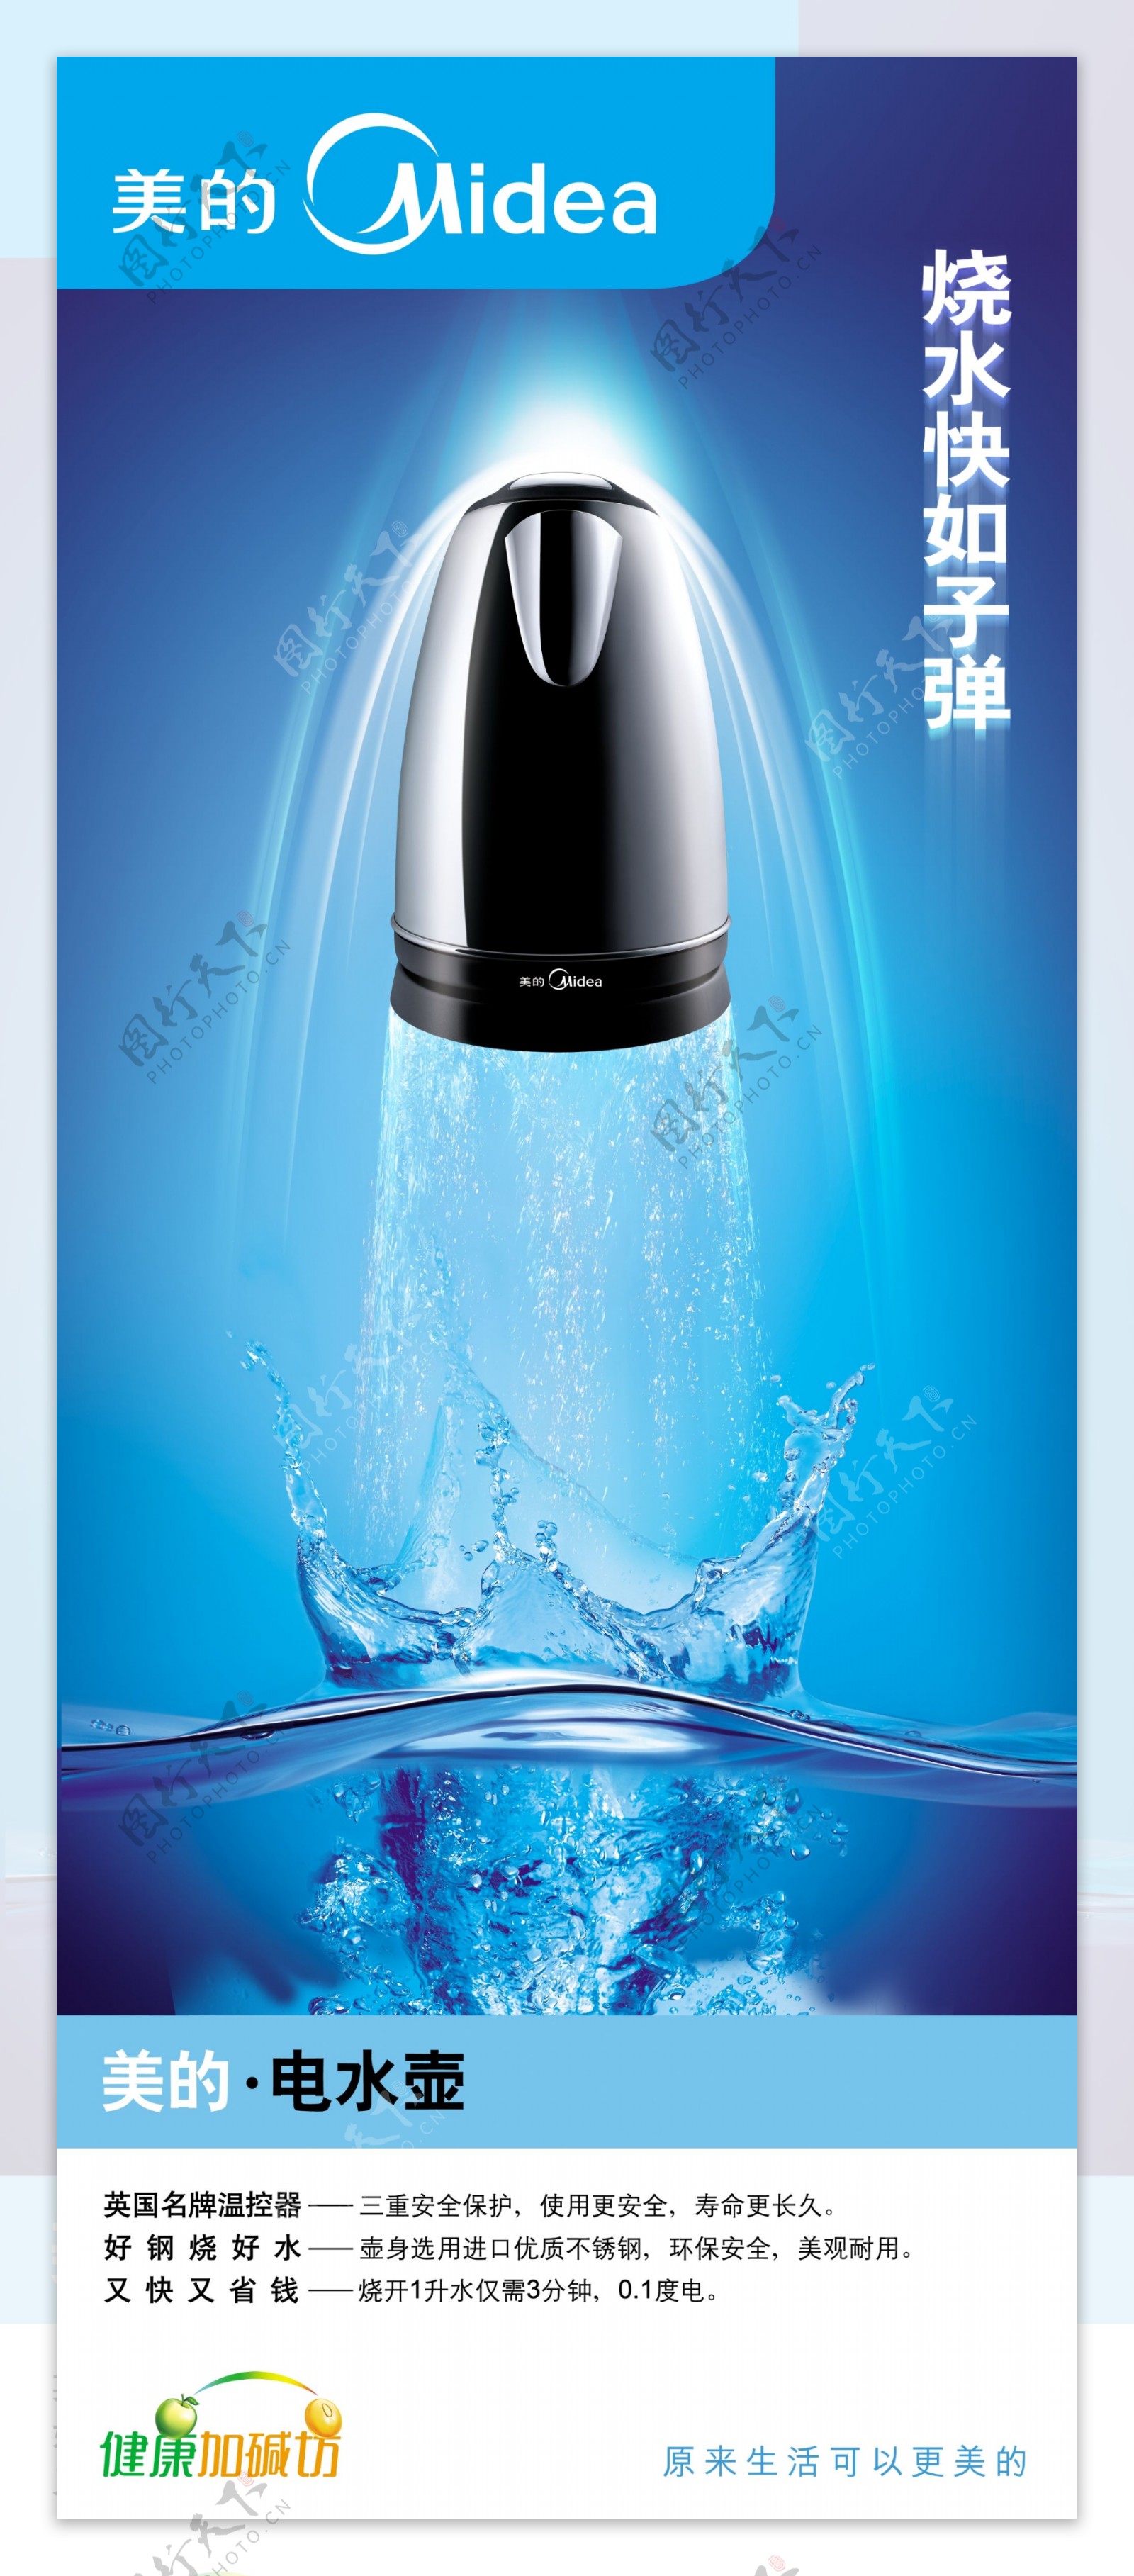 创意美的电水壶广告PSD素材